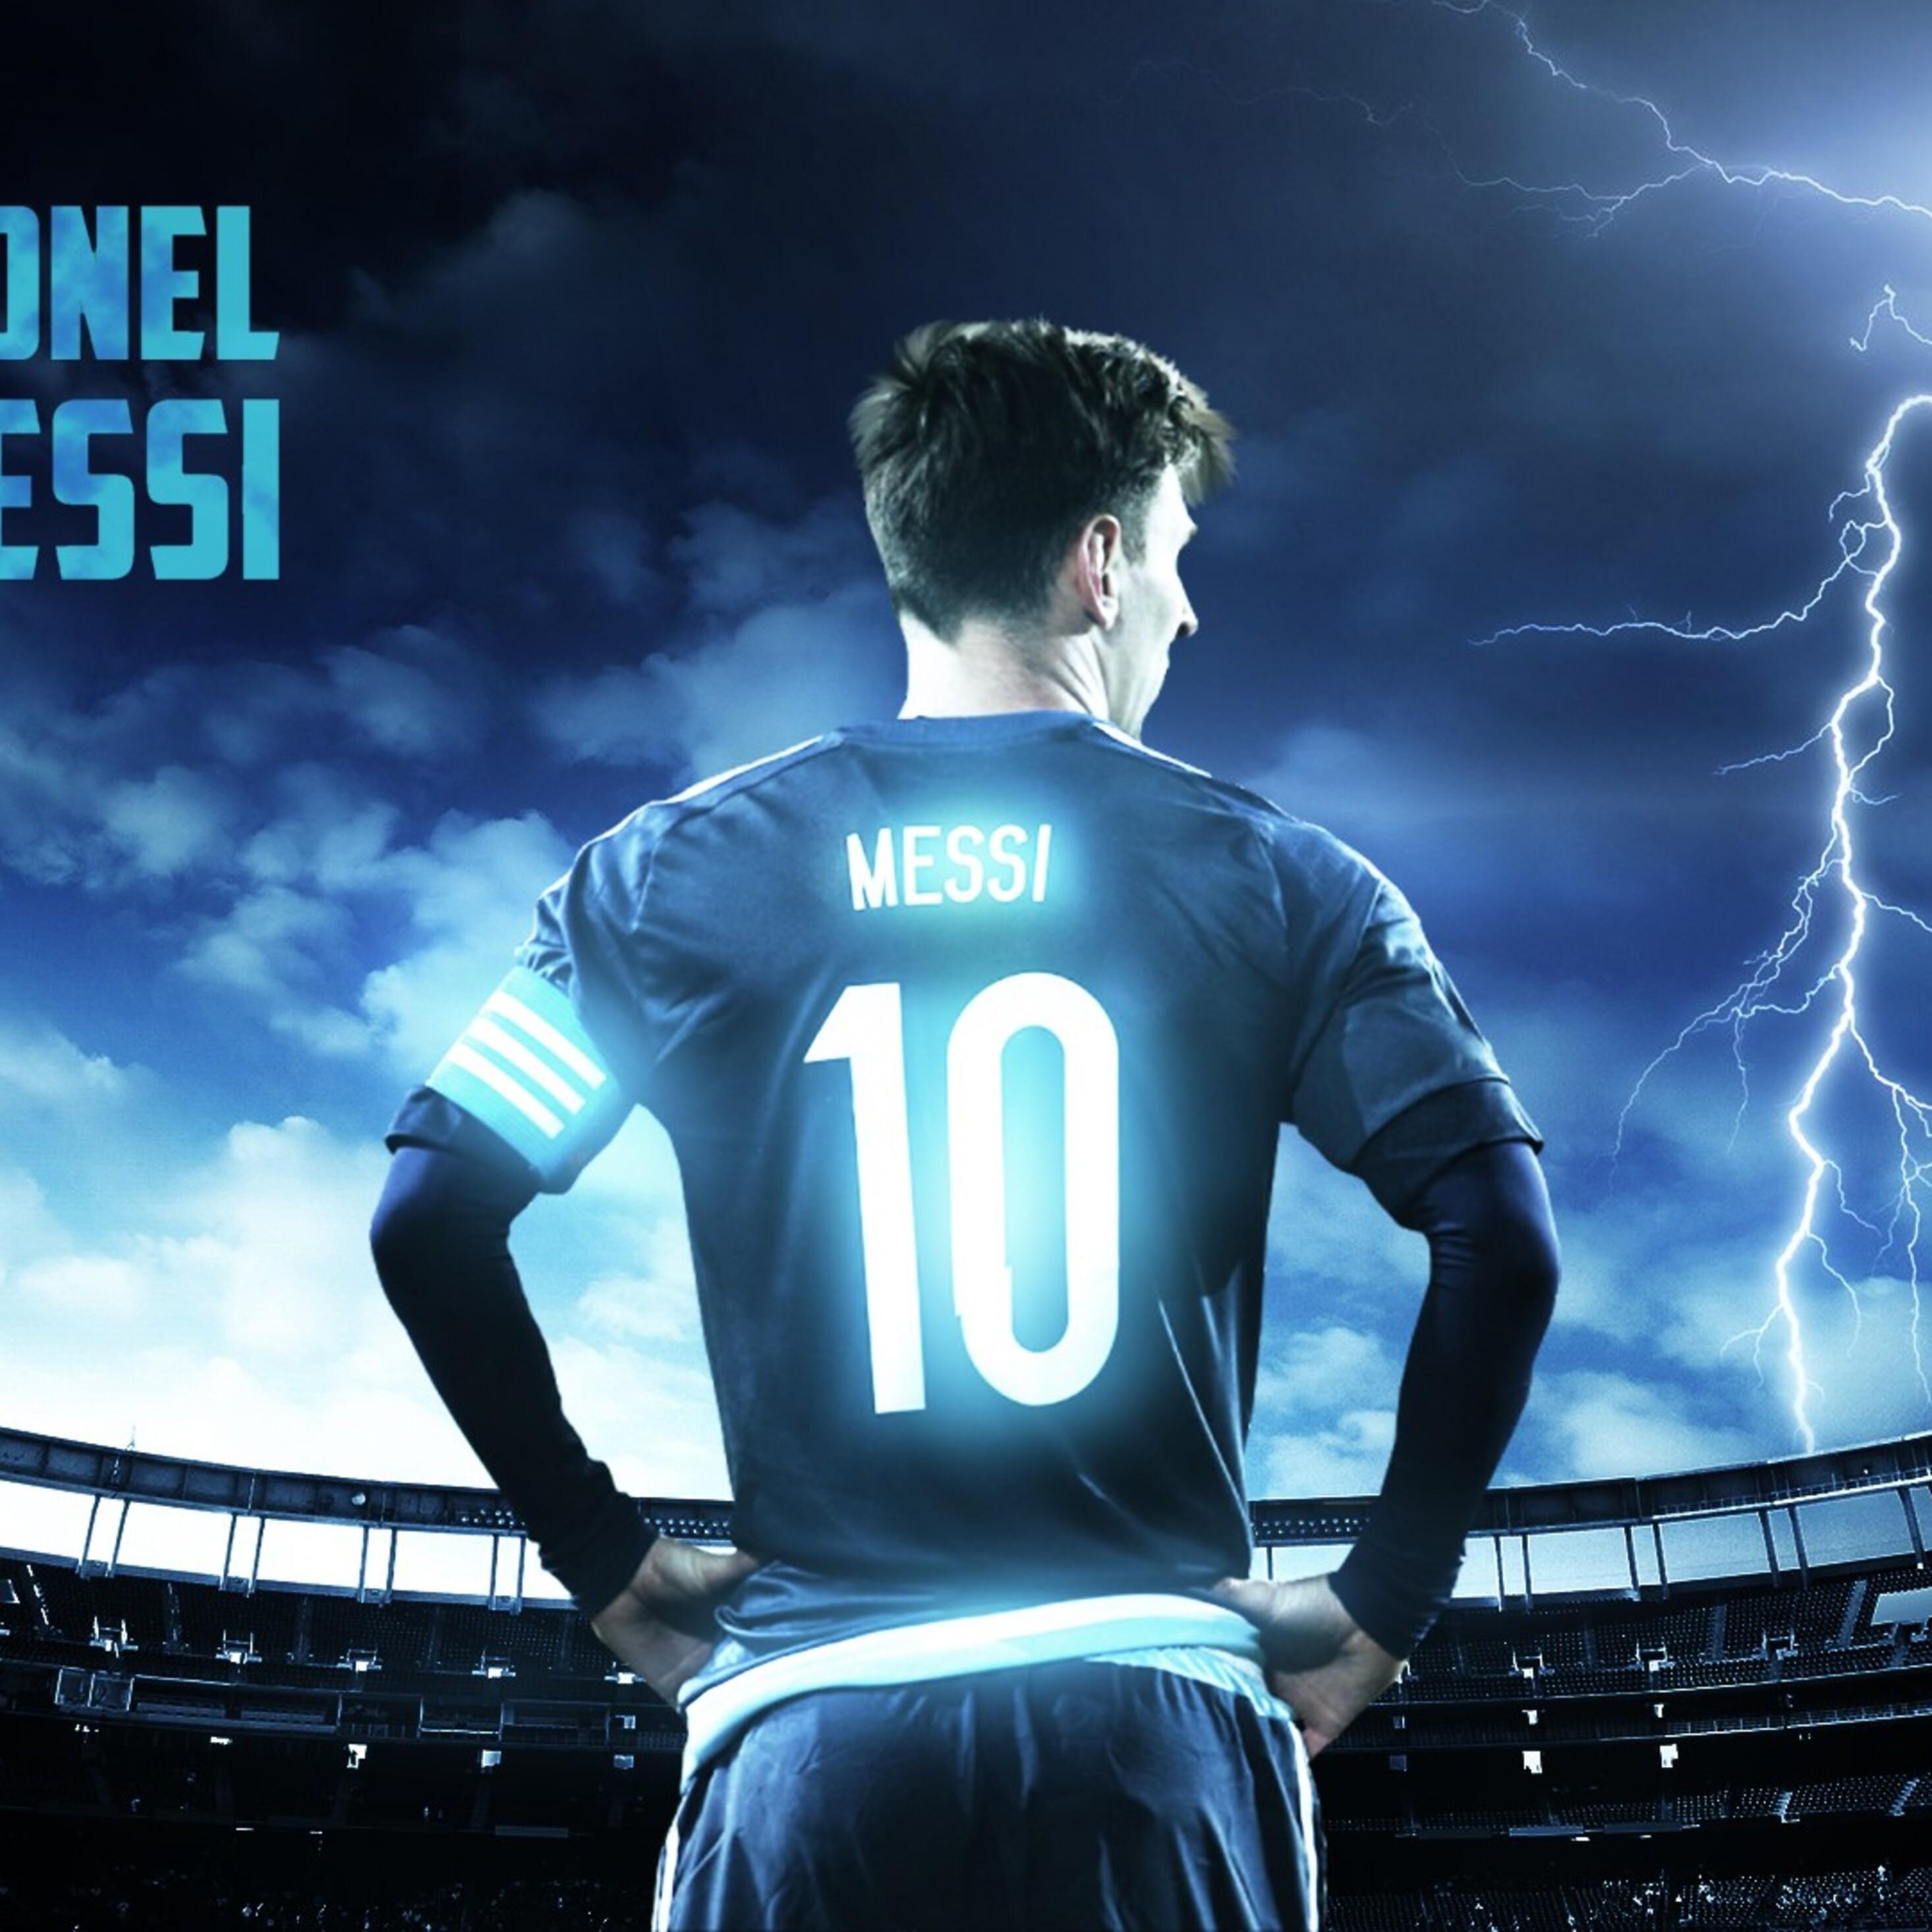 Hình nền iPad Lionel Messi miễn phí tốt nhất: Hãy sở hữu ngay một trong những hình nền iPad Lionel Messi miễn phí tốt nhất của chúng tôi. Với hình ảnh rõ nét và độ phân giải cao, chắc chắn sẽ khiến các fan của siêu sao bóng đá cảm thấy thích thú. Tải ngay và trang trí cho chiếc iPad của bạn thêm tinh thần bóng đá.